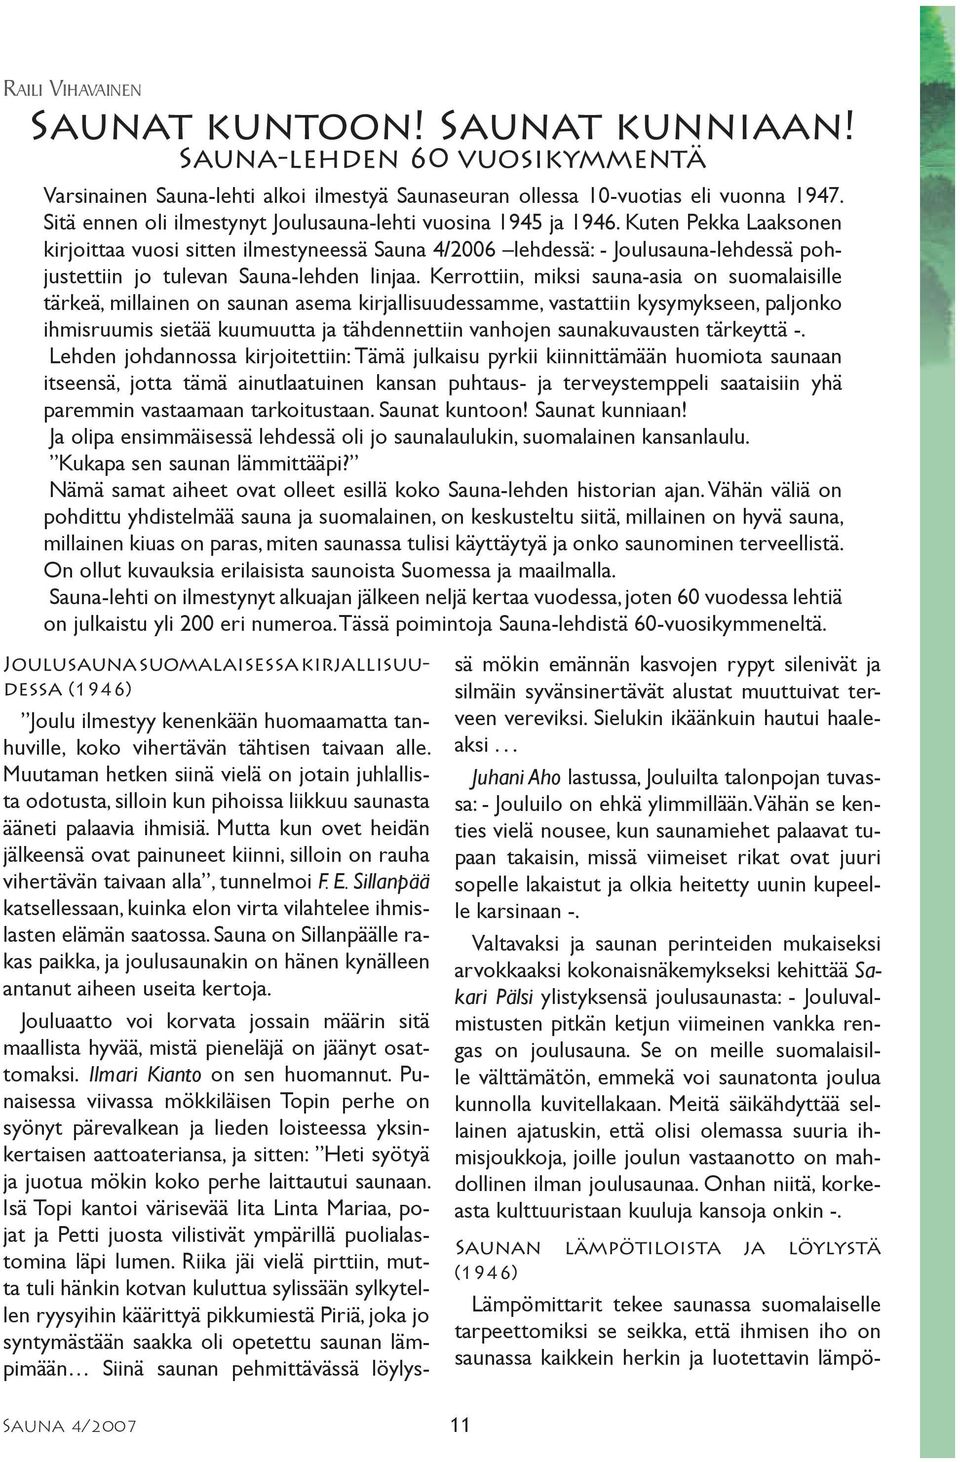 Kuten Pekka Laaksonen kirjoittaa vuosi sitten ilmestyneessä Sauna 4/2006 lehdessä: - Joulusauna-lehdessä pohjustettiin jo tulevan Sauna-lehden linjaa.